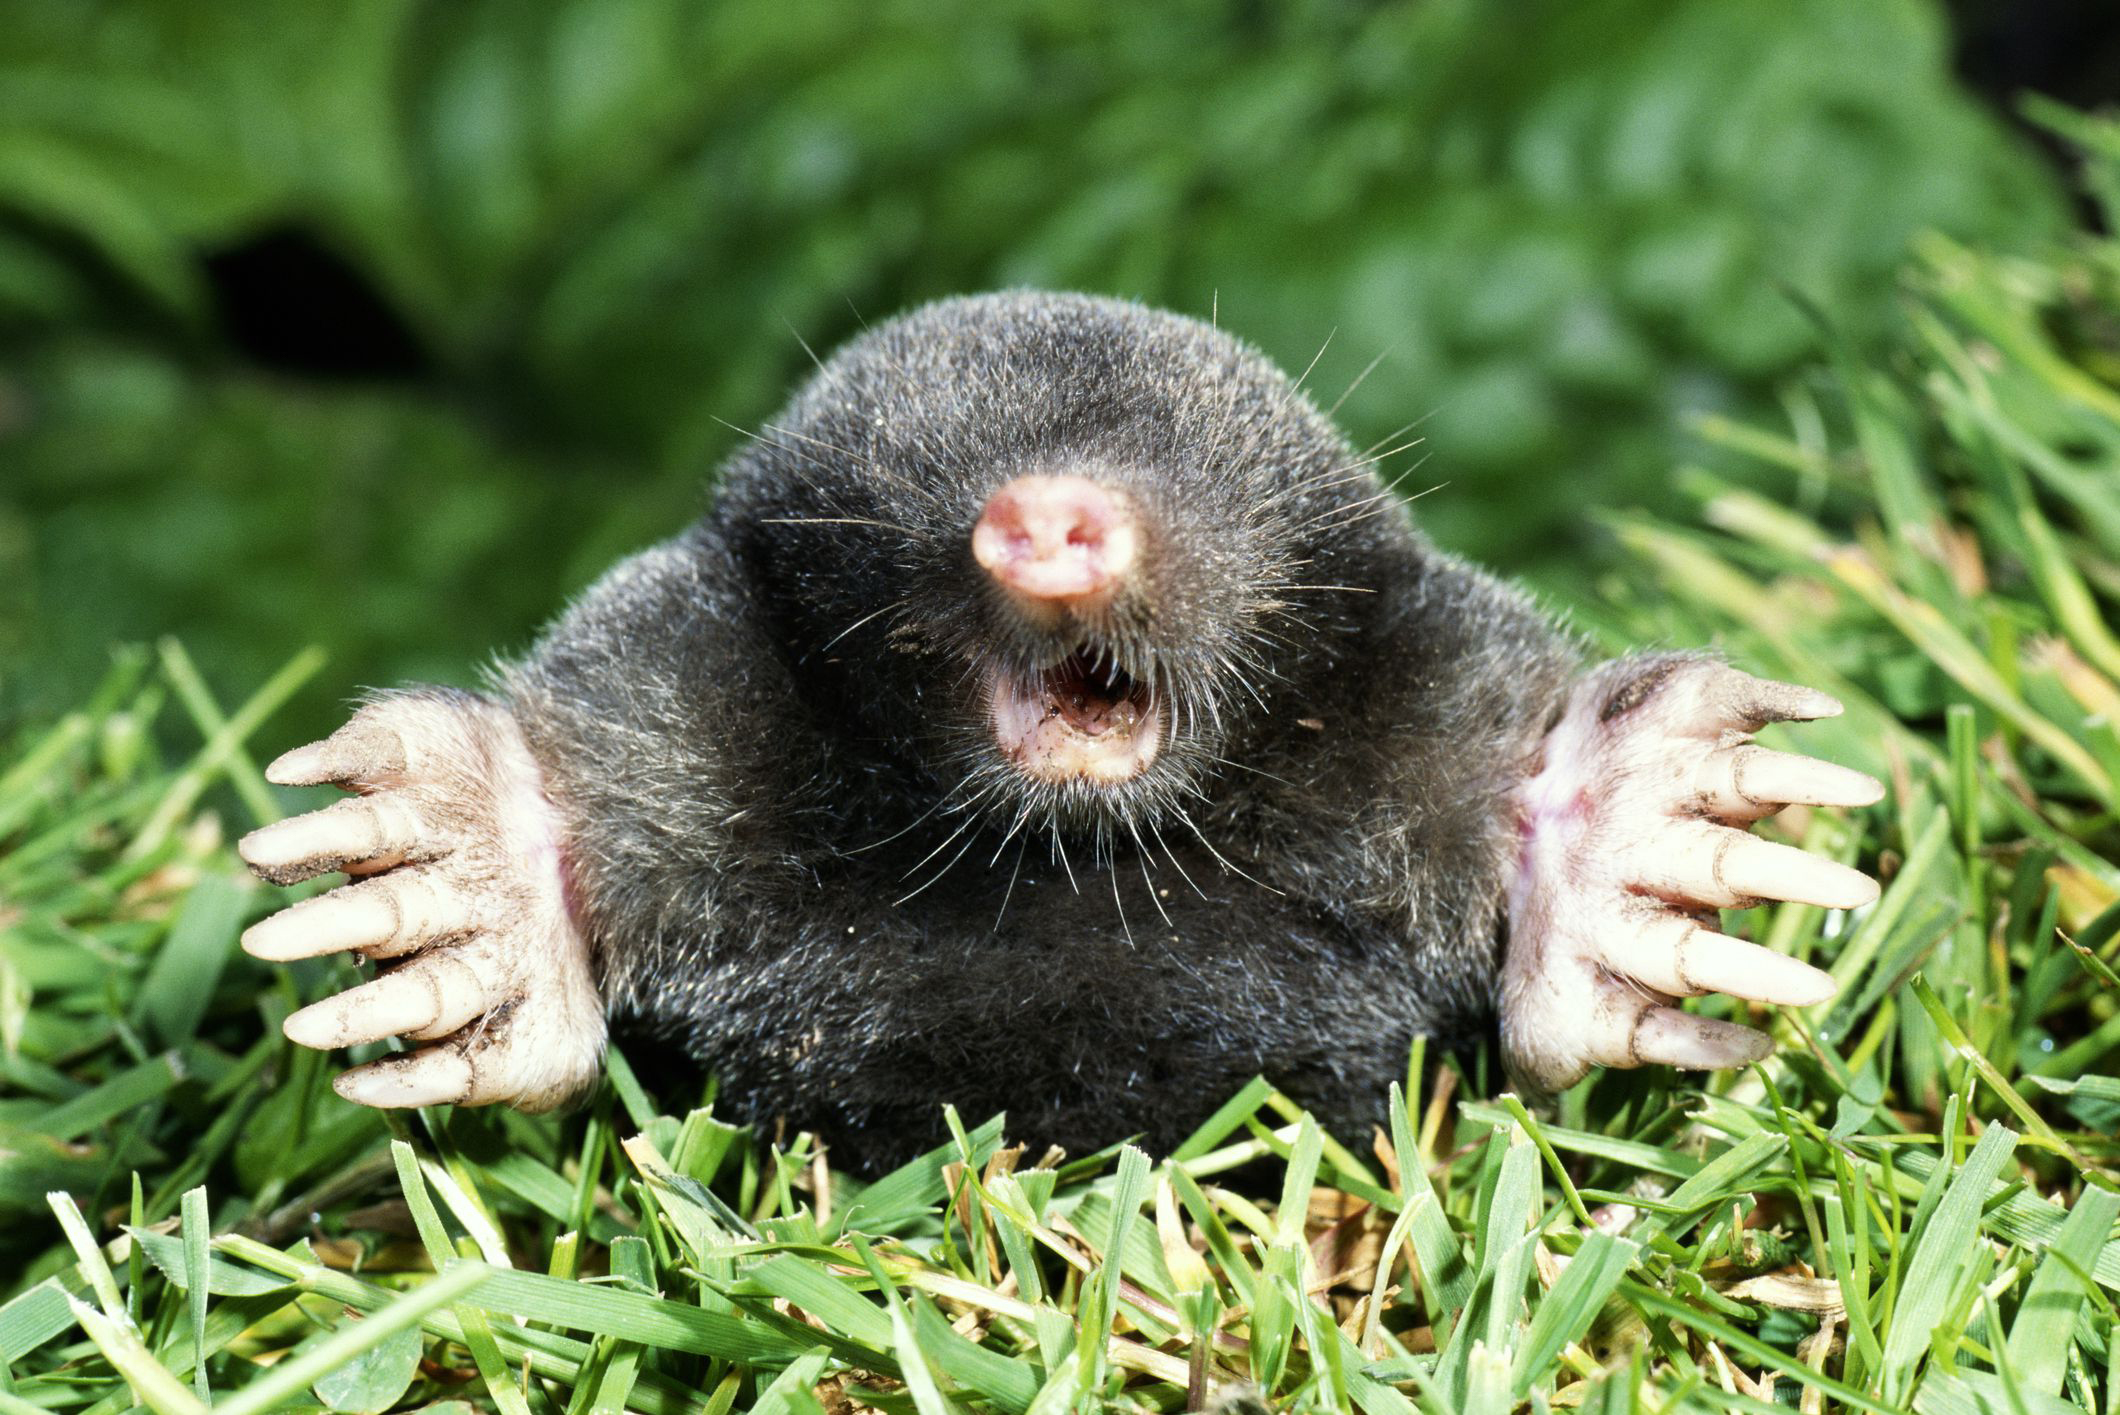 Mole Control – Tender Lawn Care